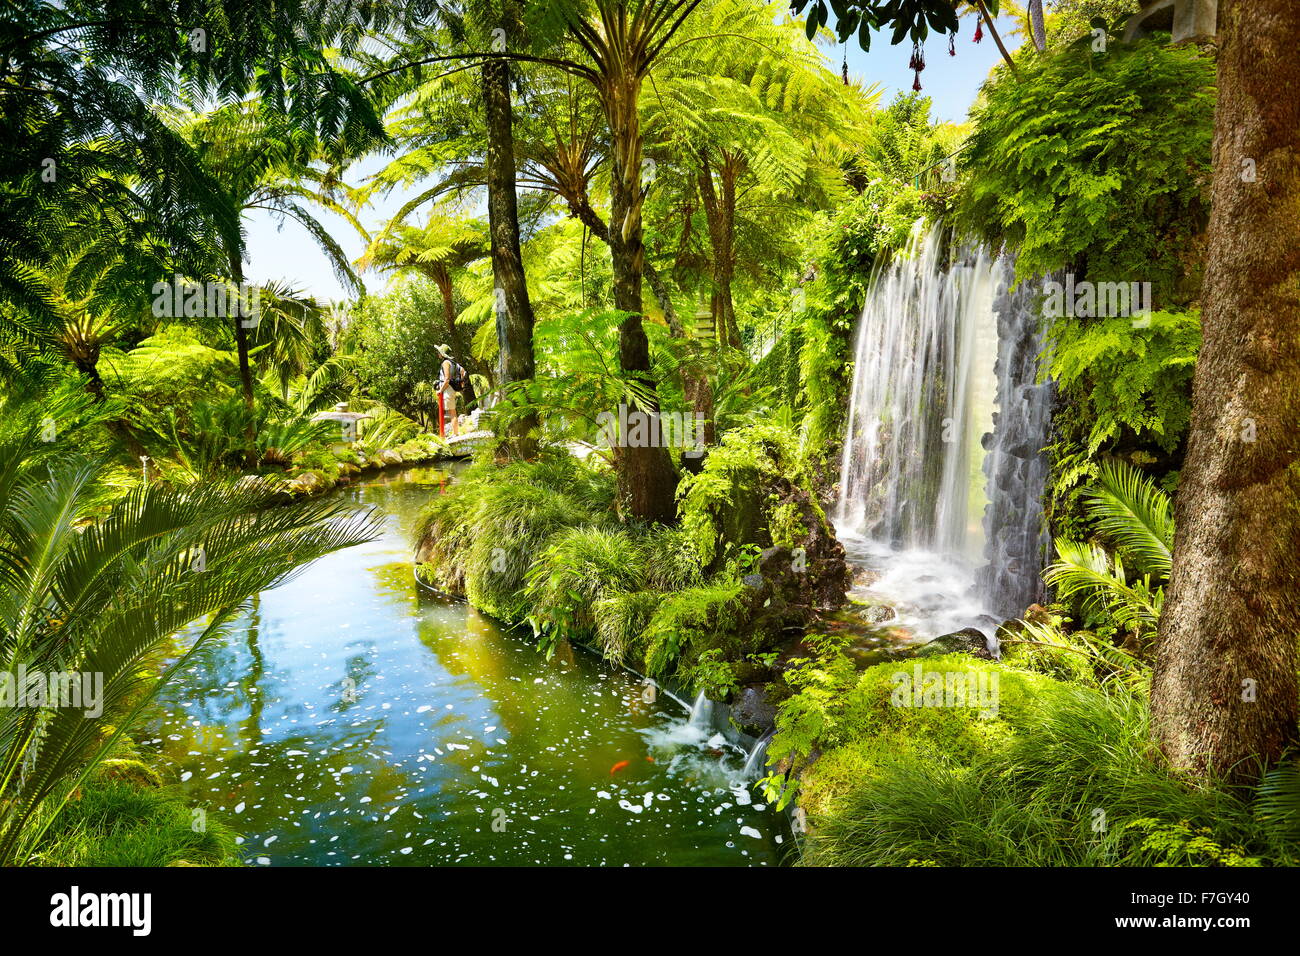 Monte Palace Tropical Garden (japanischer Garten) - Funchal, Monte, die Insel Madeira, Portugal Stockfoto